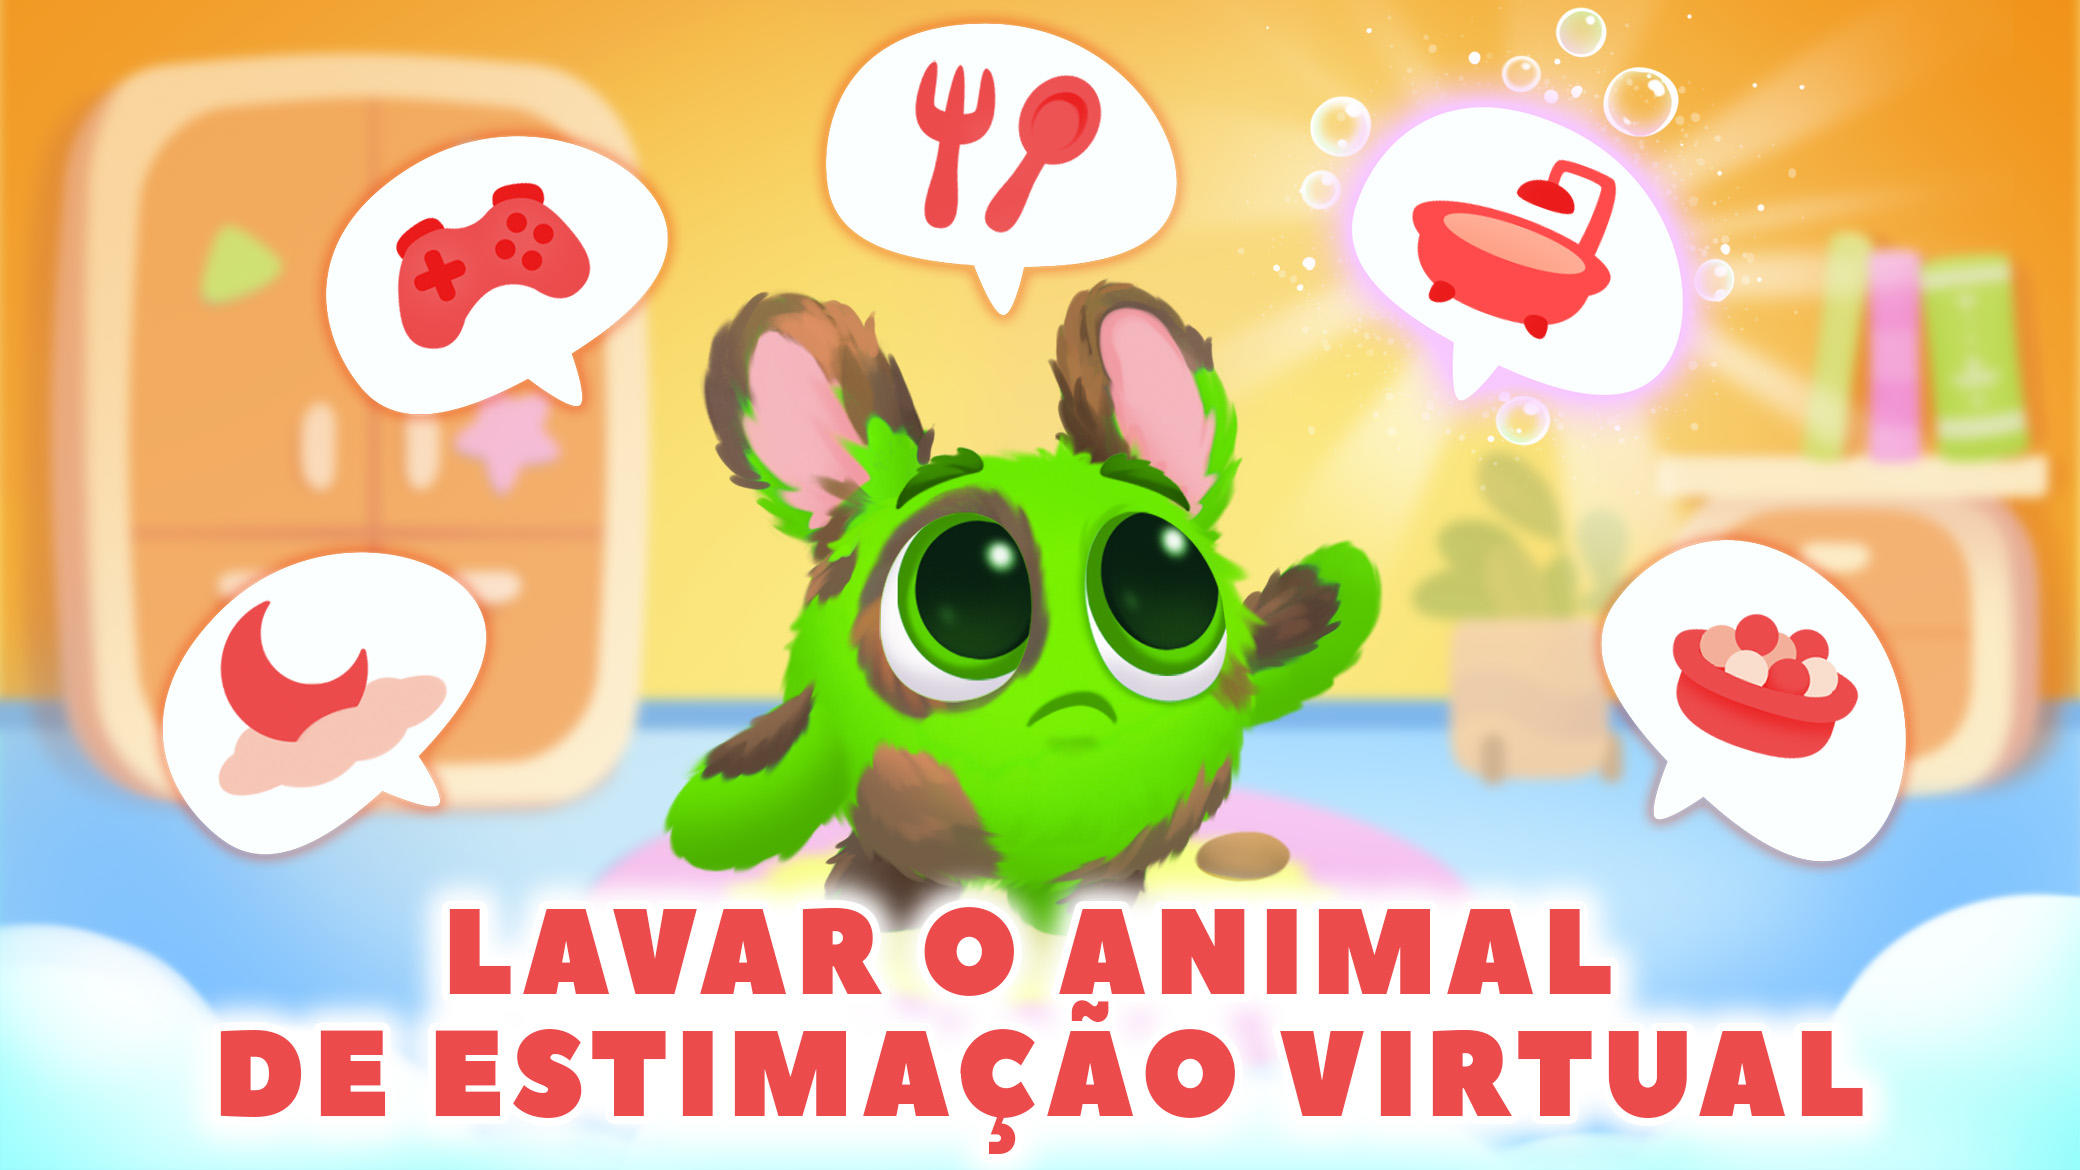 Bichinho fofo Jogo virtual pet versão móvel andróide iOS apk